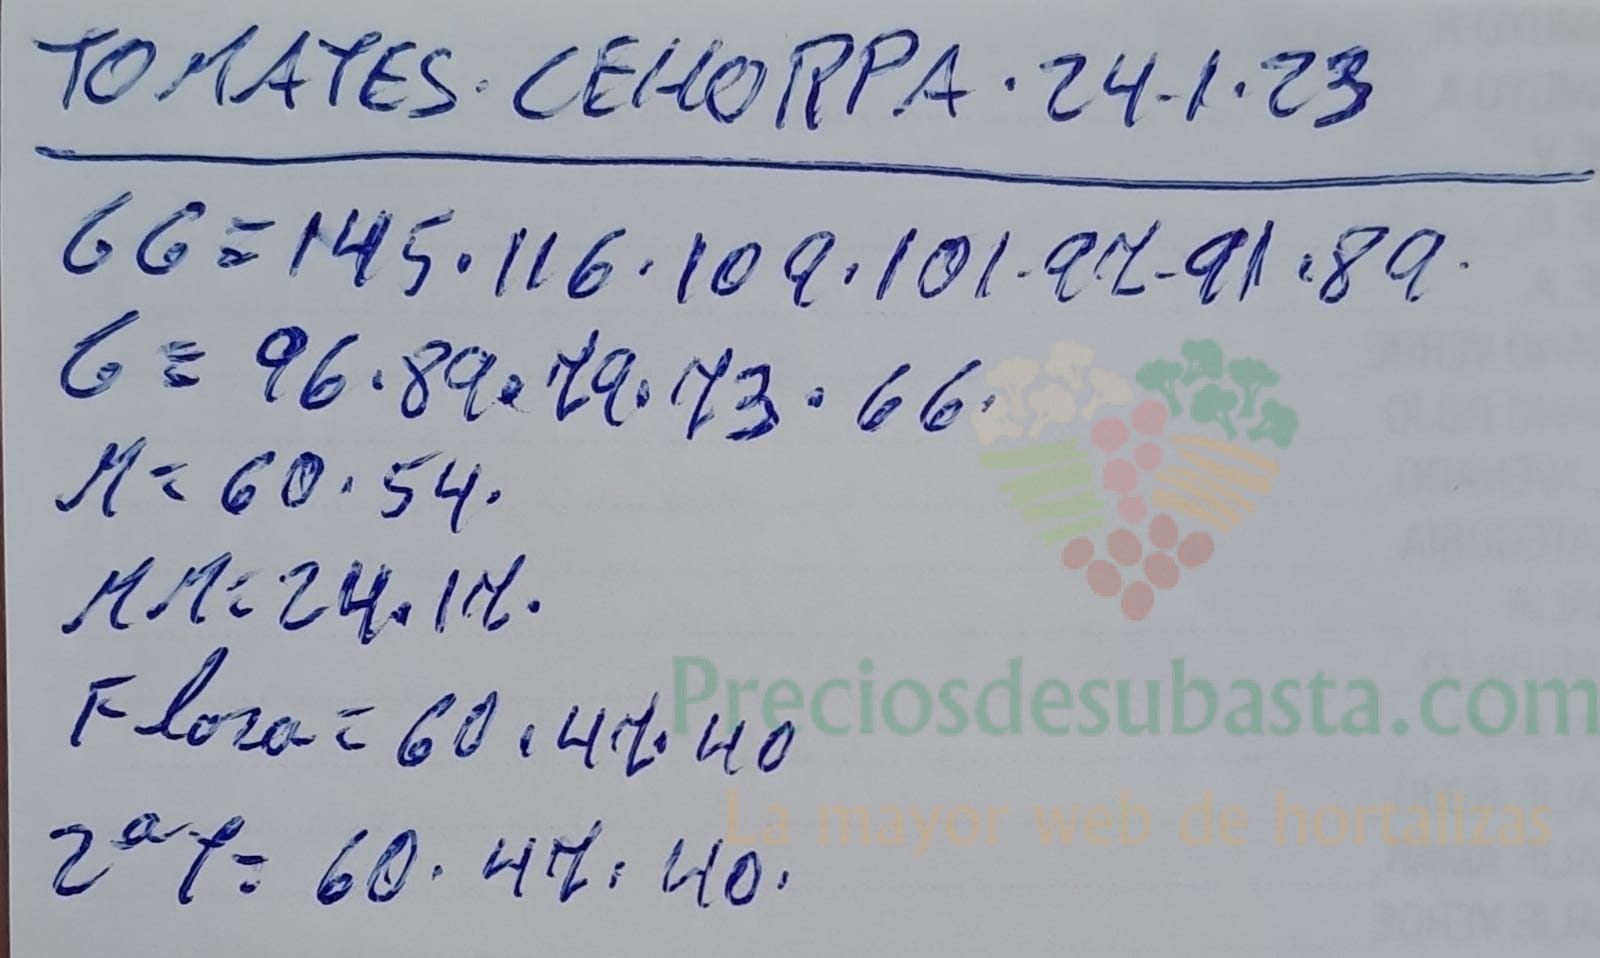 Subasta hortofrutícola Costa de Almería Cehorpa tomate 24 de enero 2023